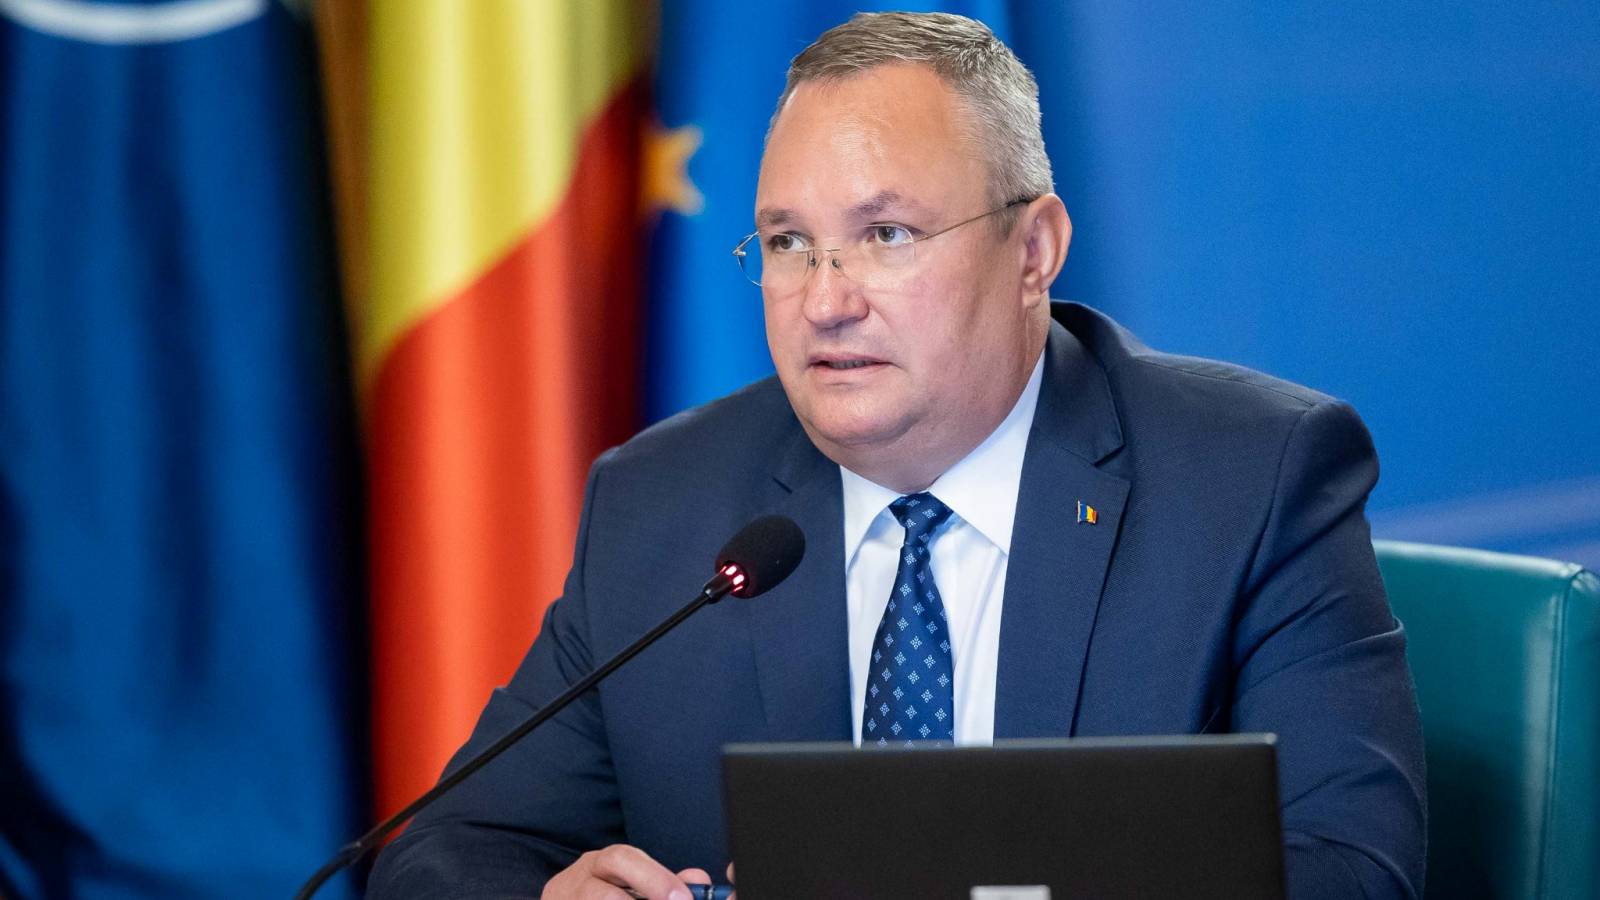 Nicolae Ciuca tillkännager nya regeringsåtgärder för Rumänien